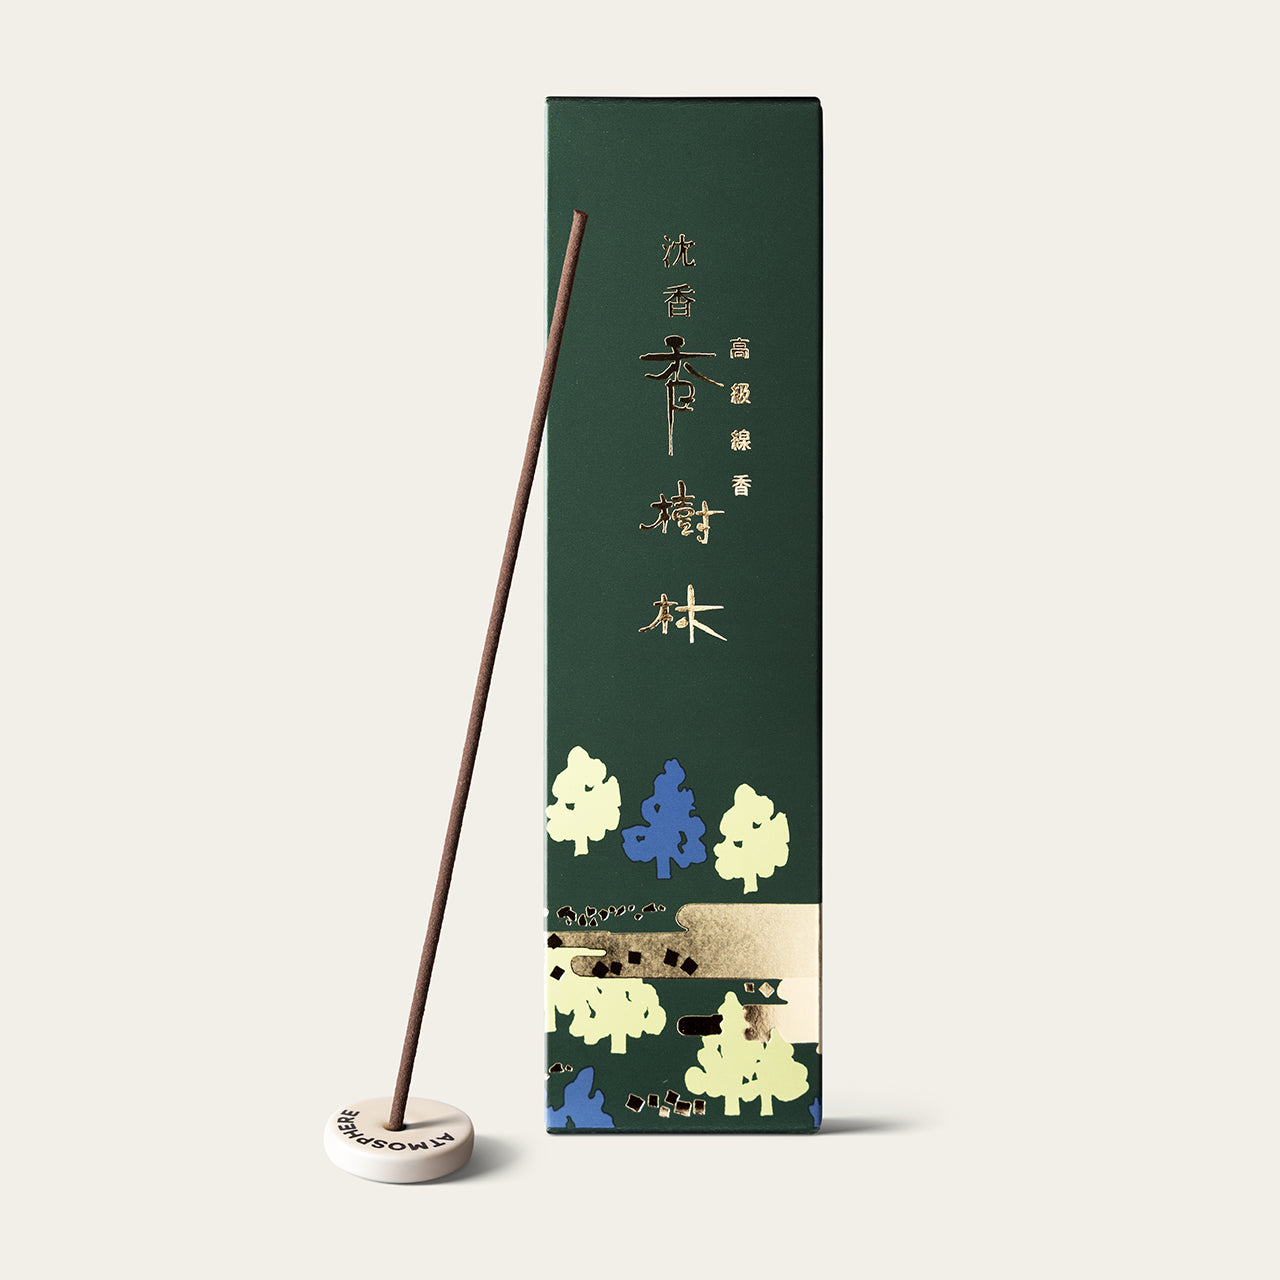 Gyokushodo Jinko Kojurin Agarwood Kojurin Japanese incense sticks (25 sticks) with Atmosphere ceramic incense holder